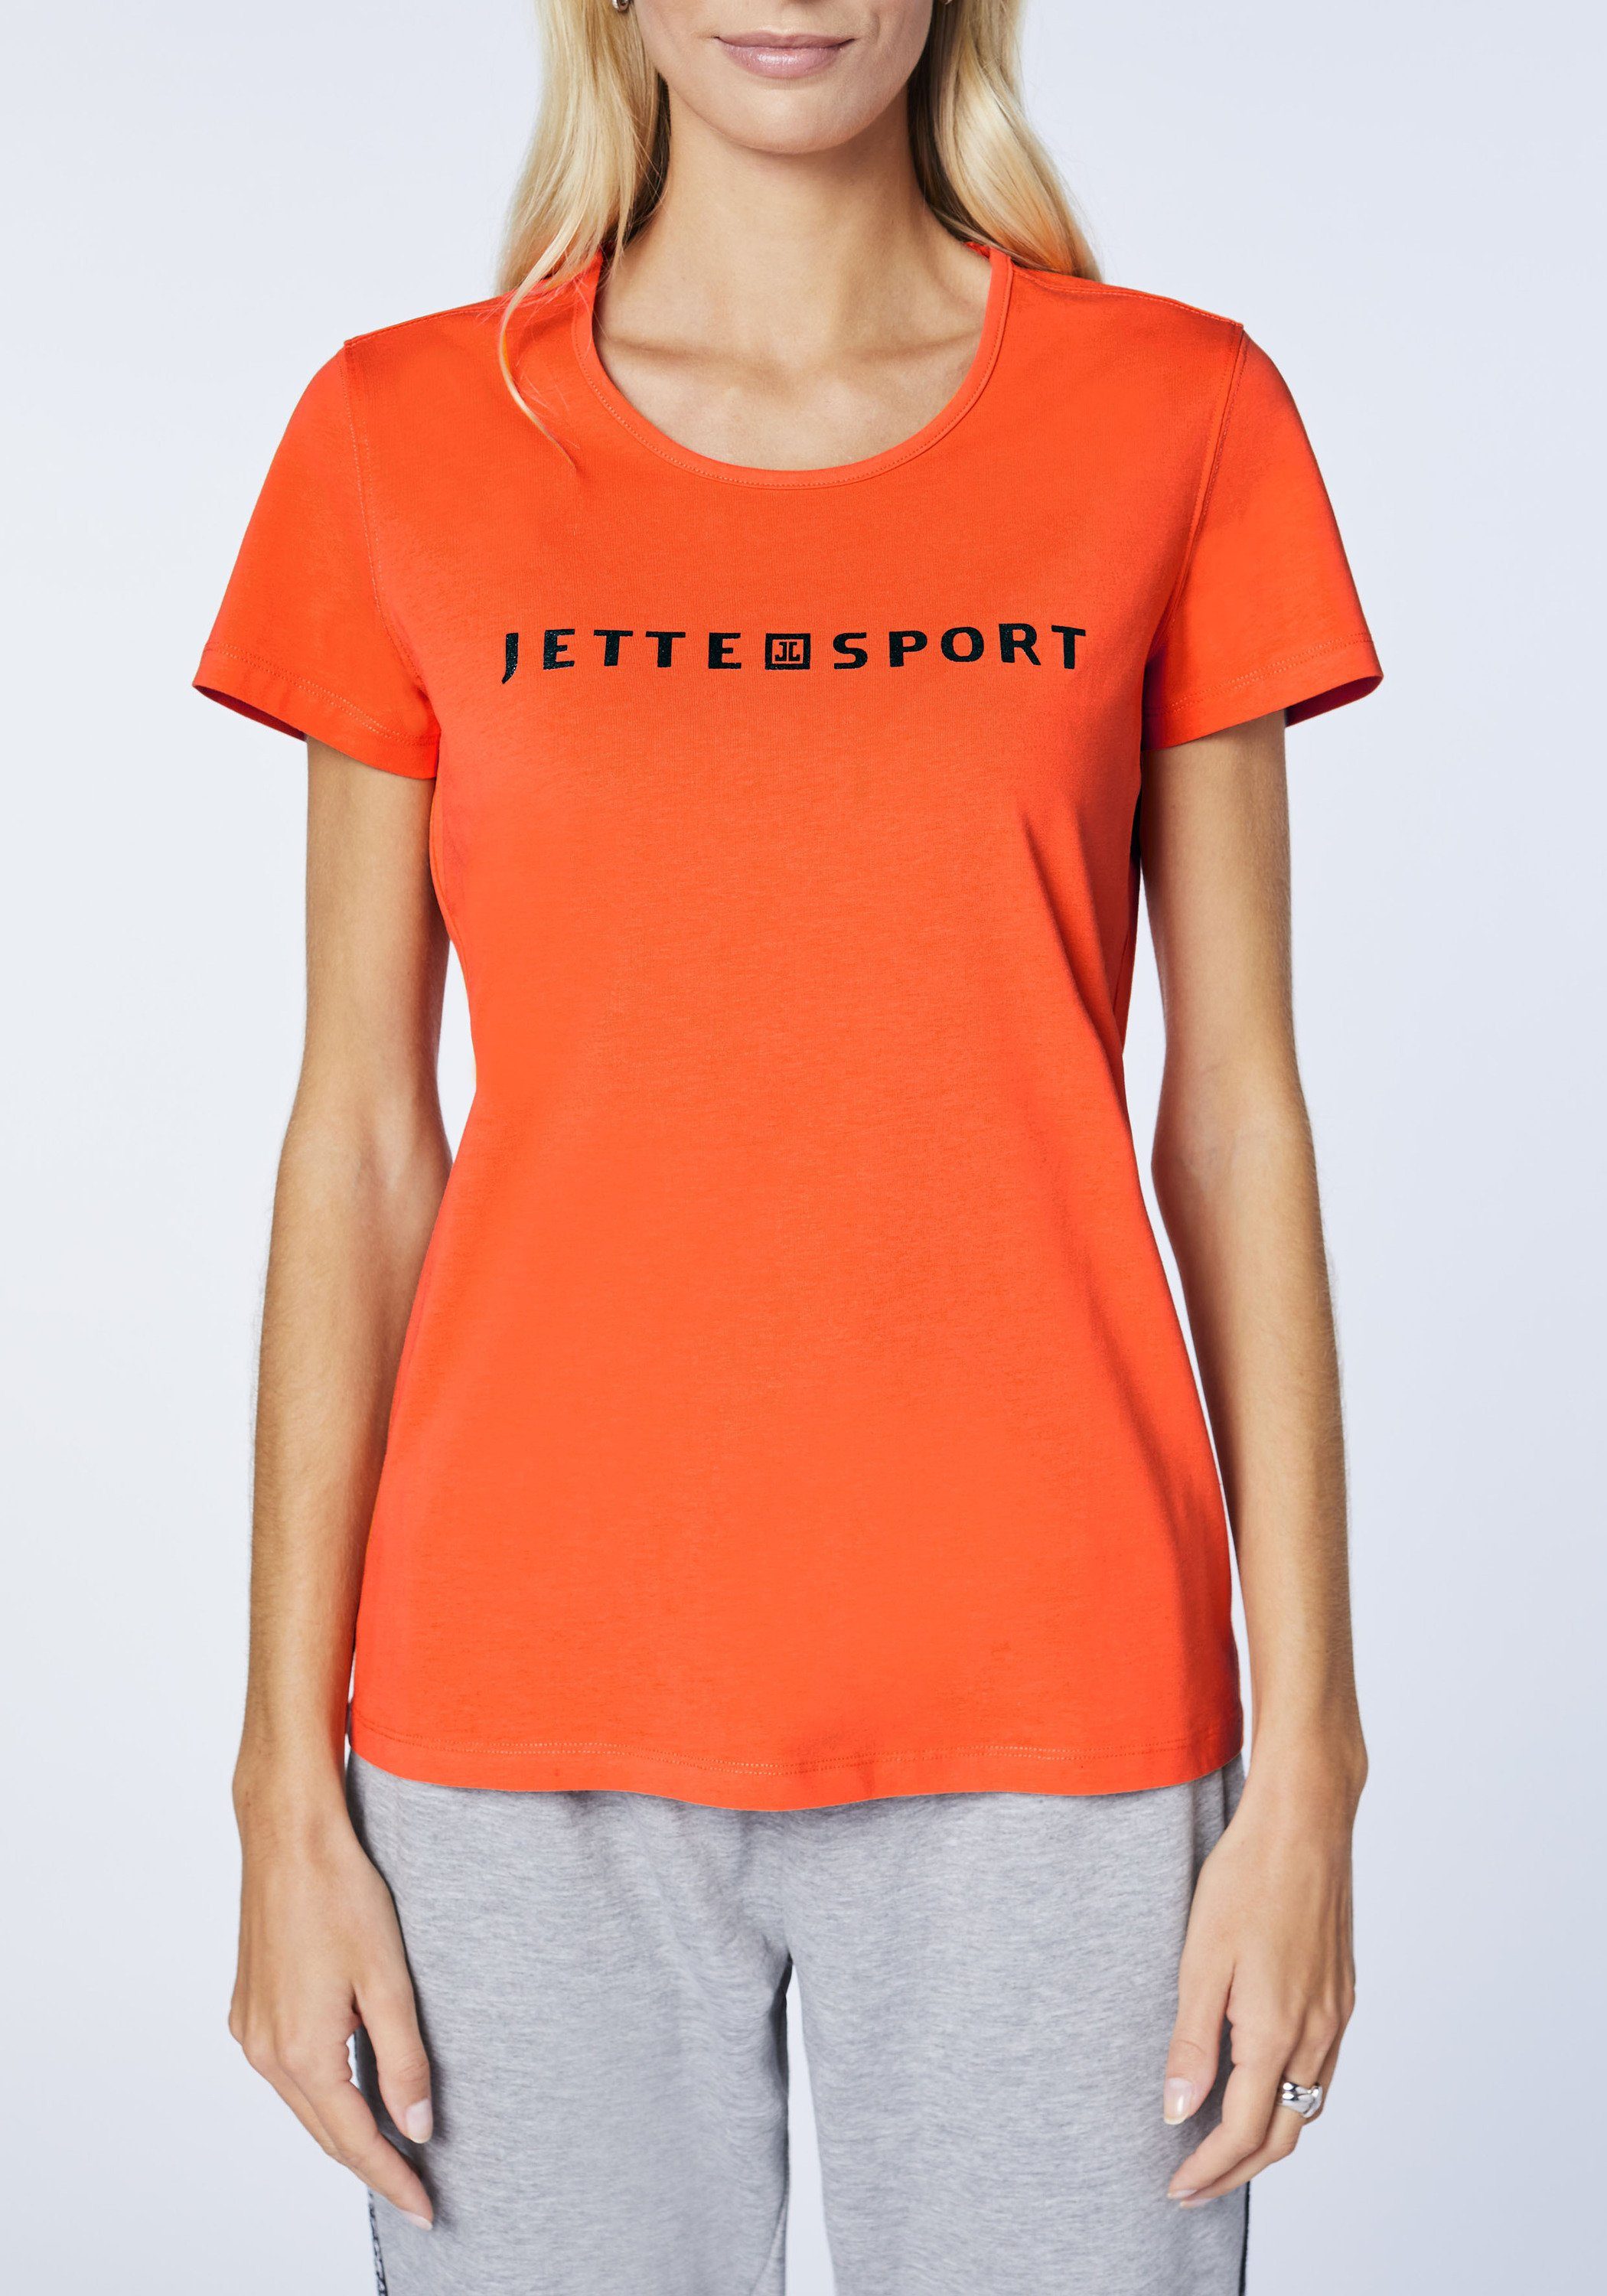 SPORT Flame Print-Shirt 17-1462 mit Label-Print JETTE